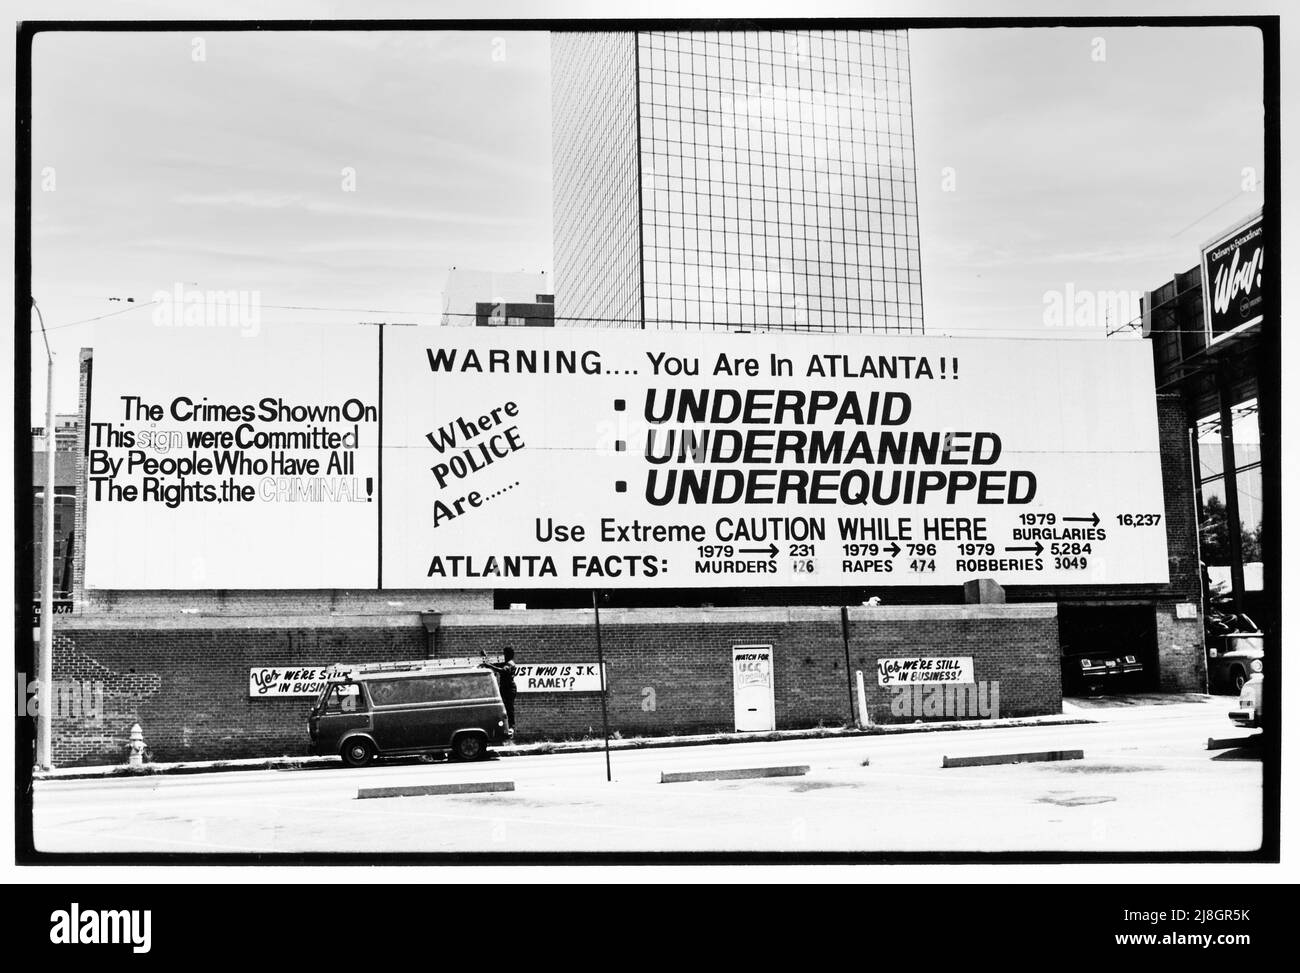 Ein beängstigendes Zeichen in Atlanta, Georgia, das von der Polizei und/oder ihren Unterstützern gesponsert wird und besagt, dass die Bullen unterbezahlt, unterbesetzt und unterausgestattet sind, während alle Arten von Verbrechen auf dem Vormarsch waren. Etwa 1979 oder 1980. Stockfoto